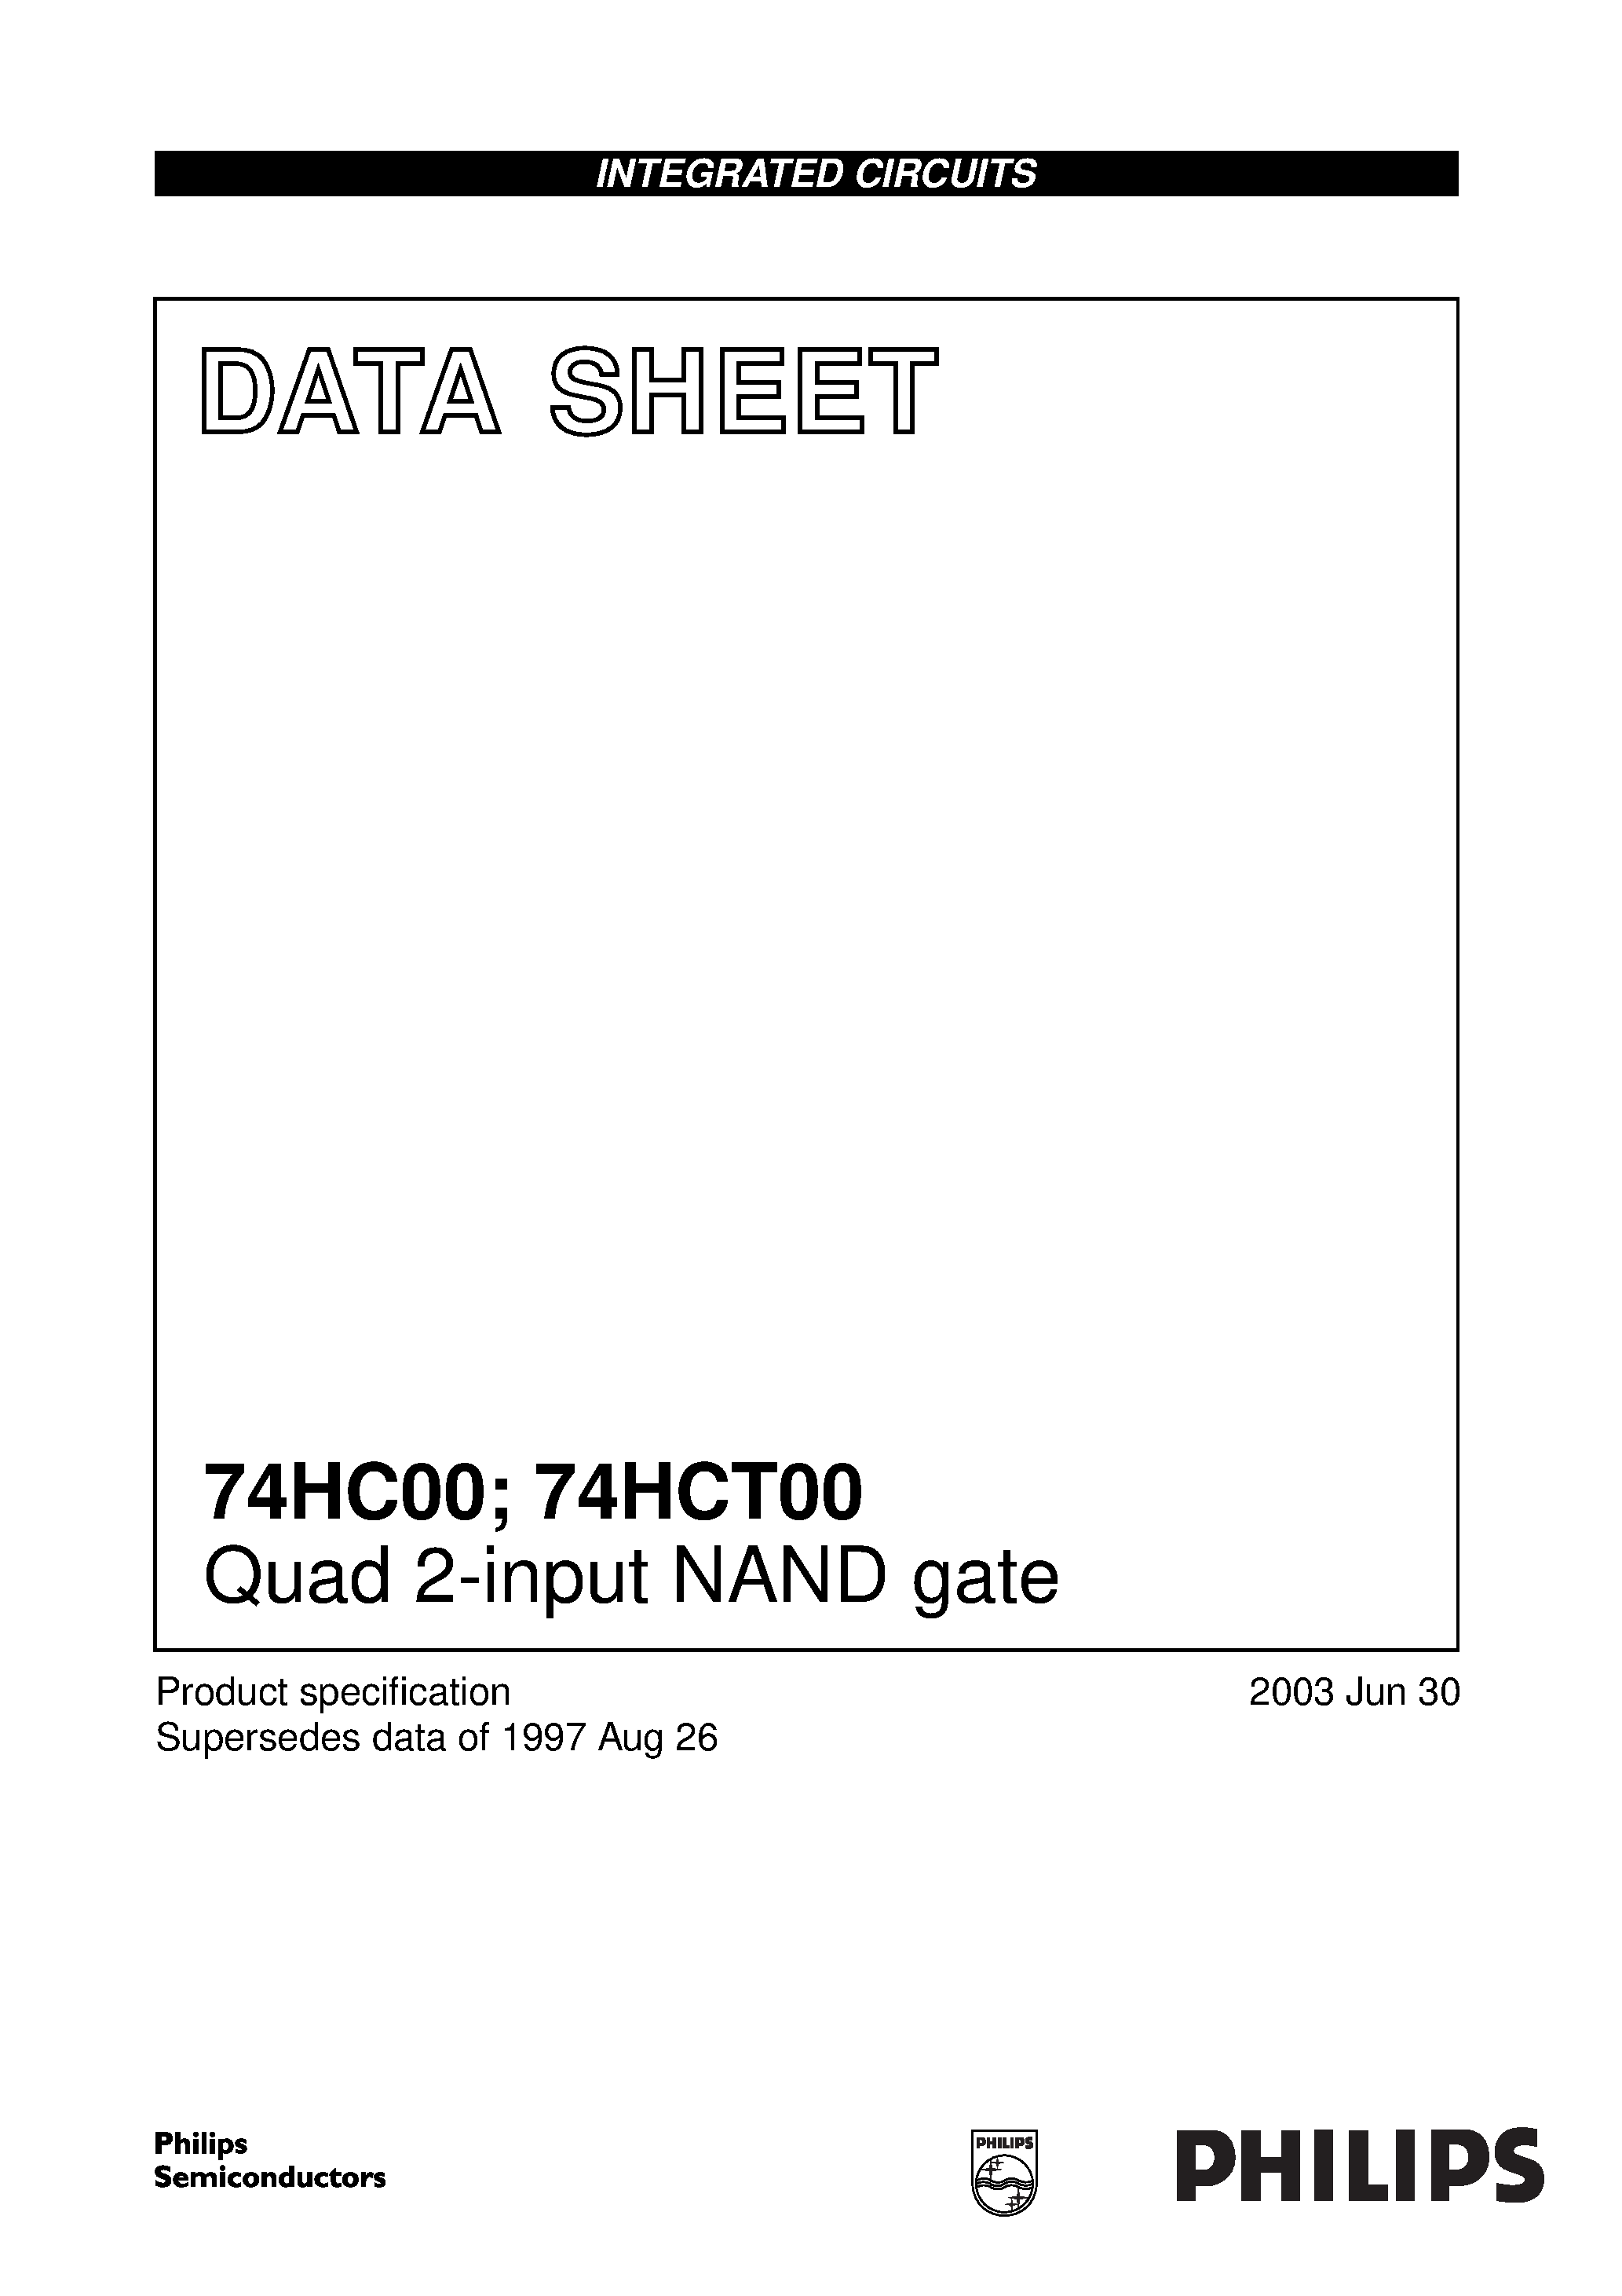 Даташит 74HCT00N - Quad 2-input NAND gate страница 1